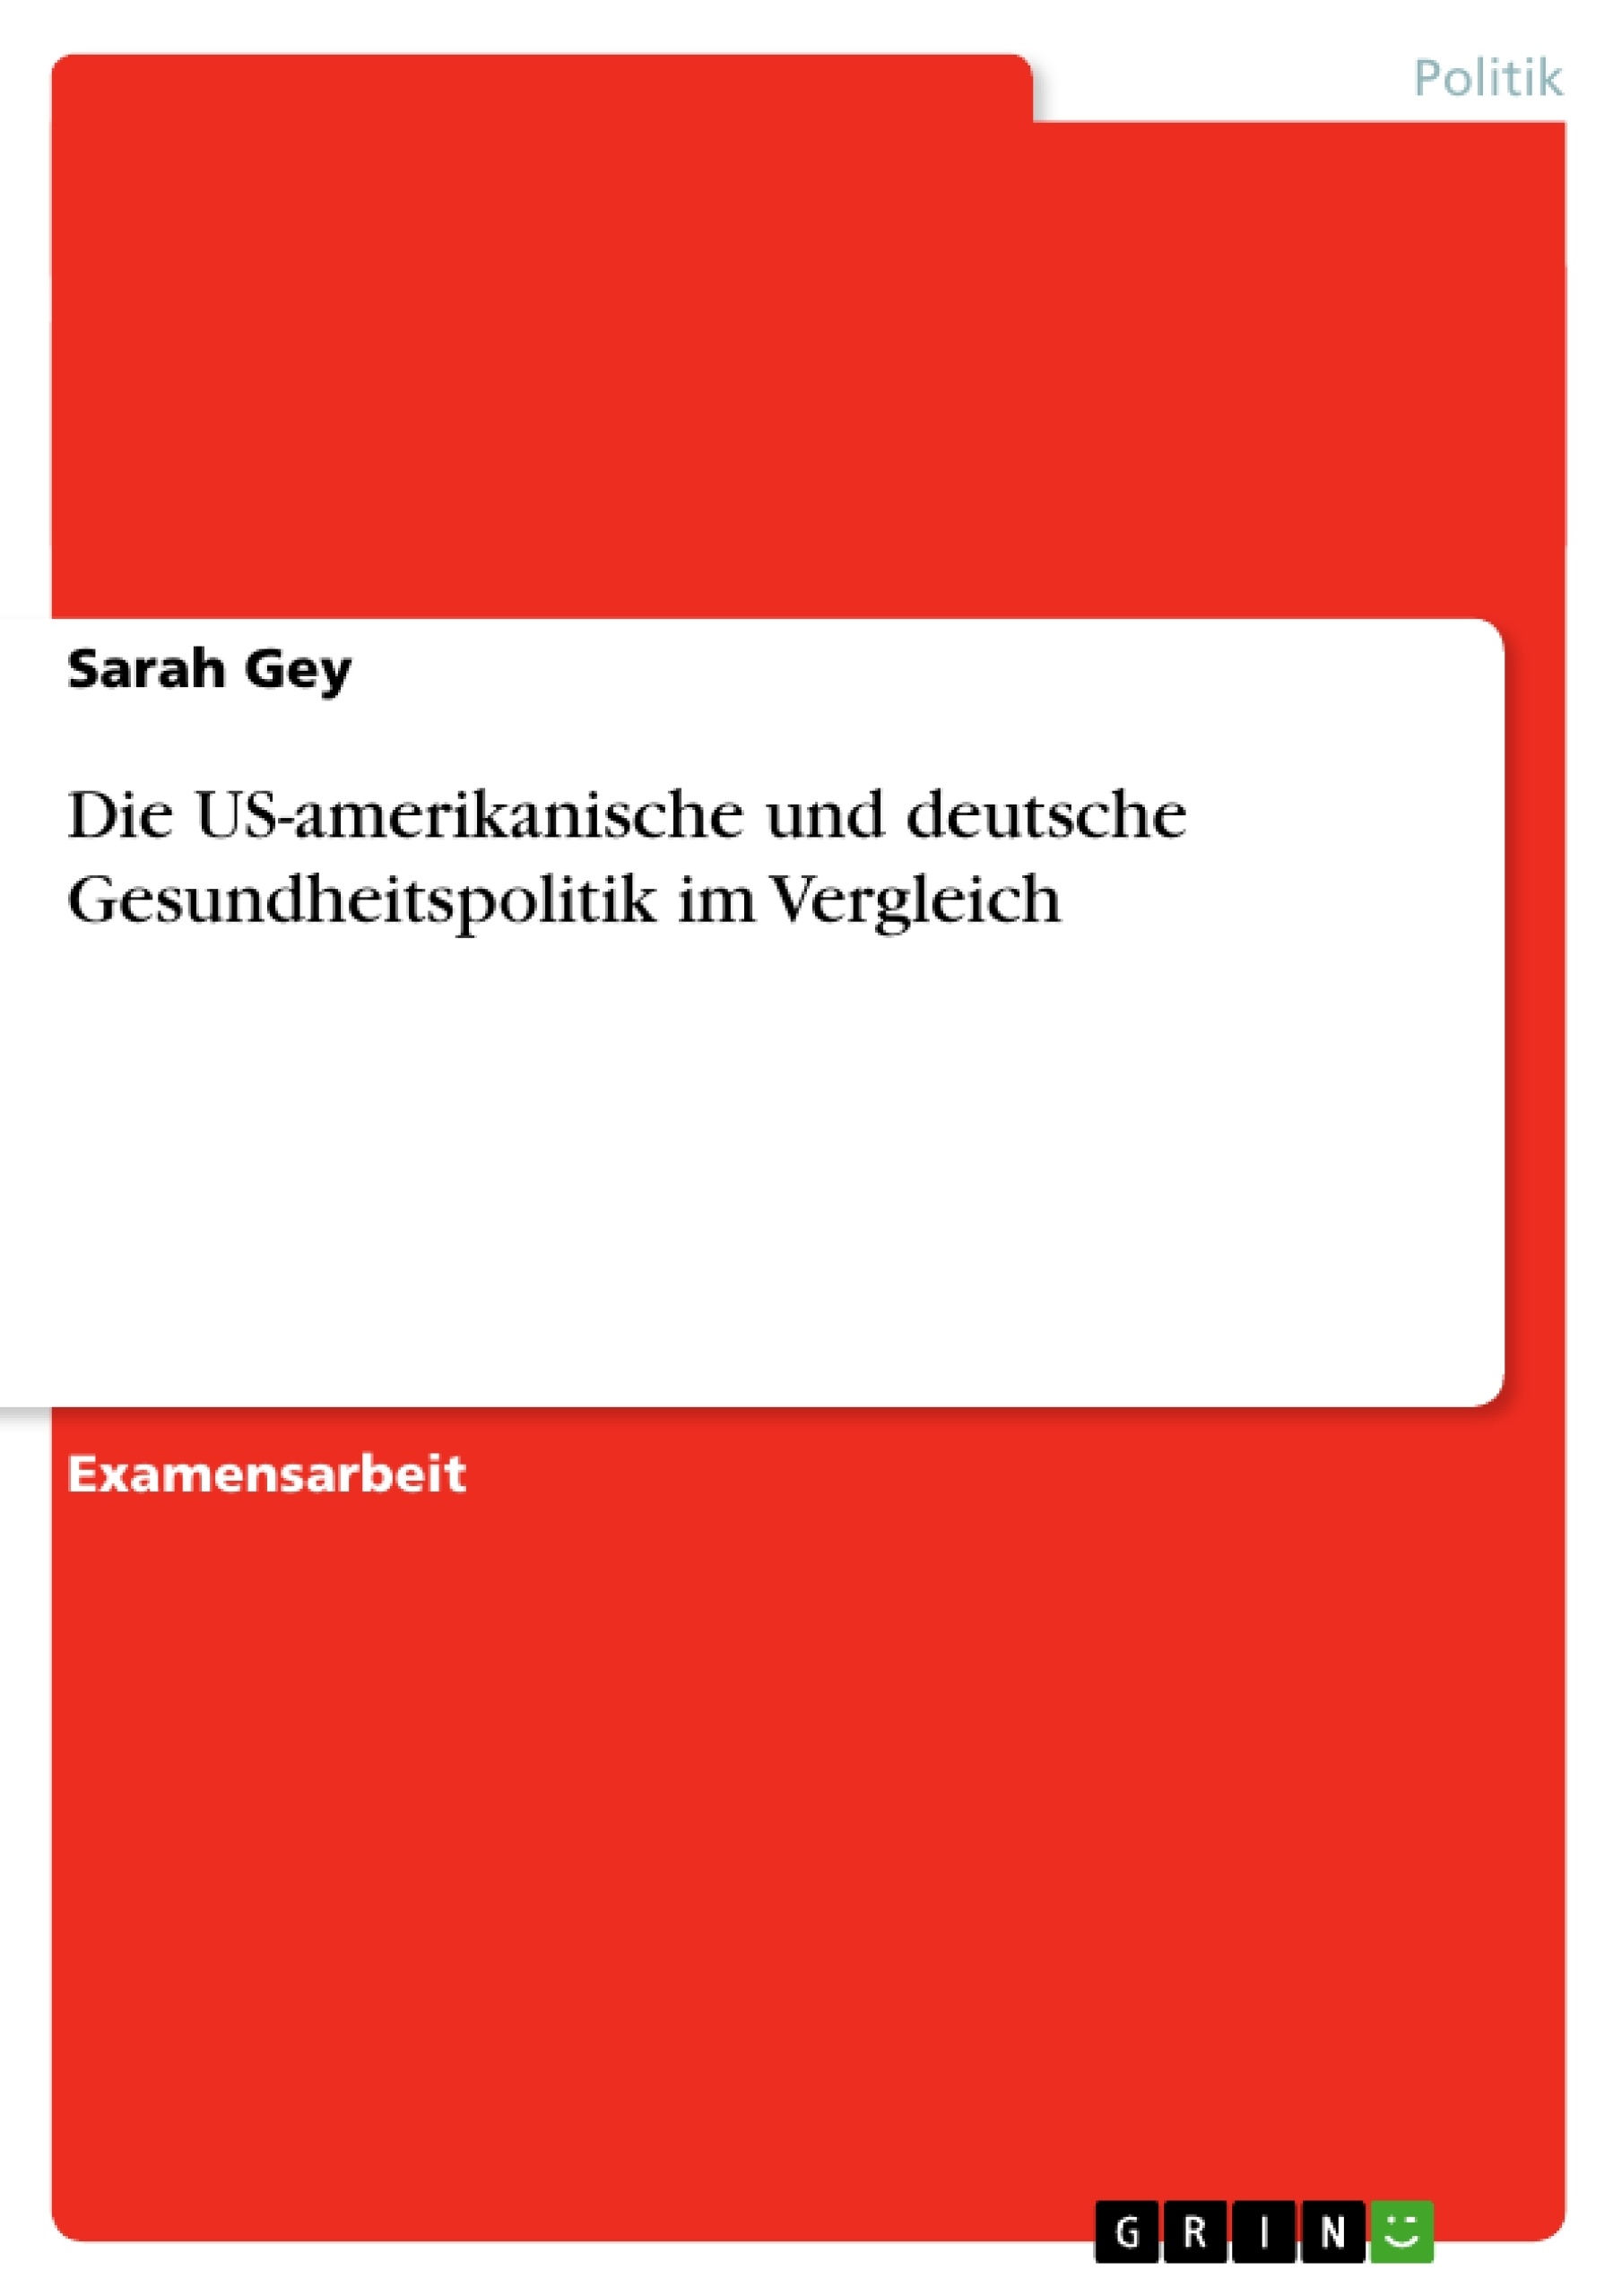 Title: Die US-amerikanische und deutsche Gesundheitspolitik im Vergleich